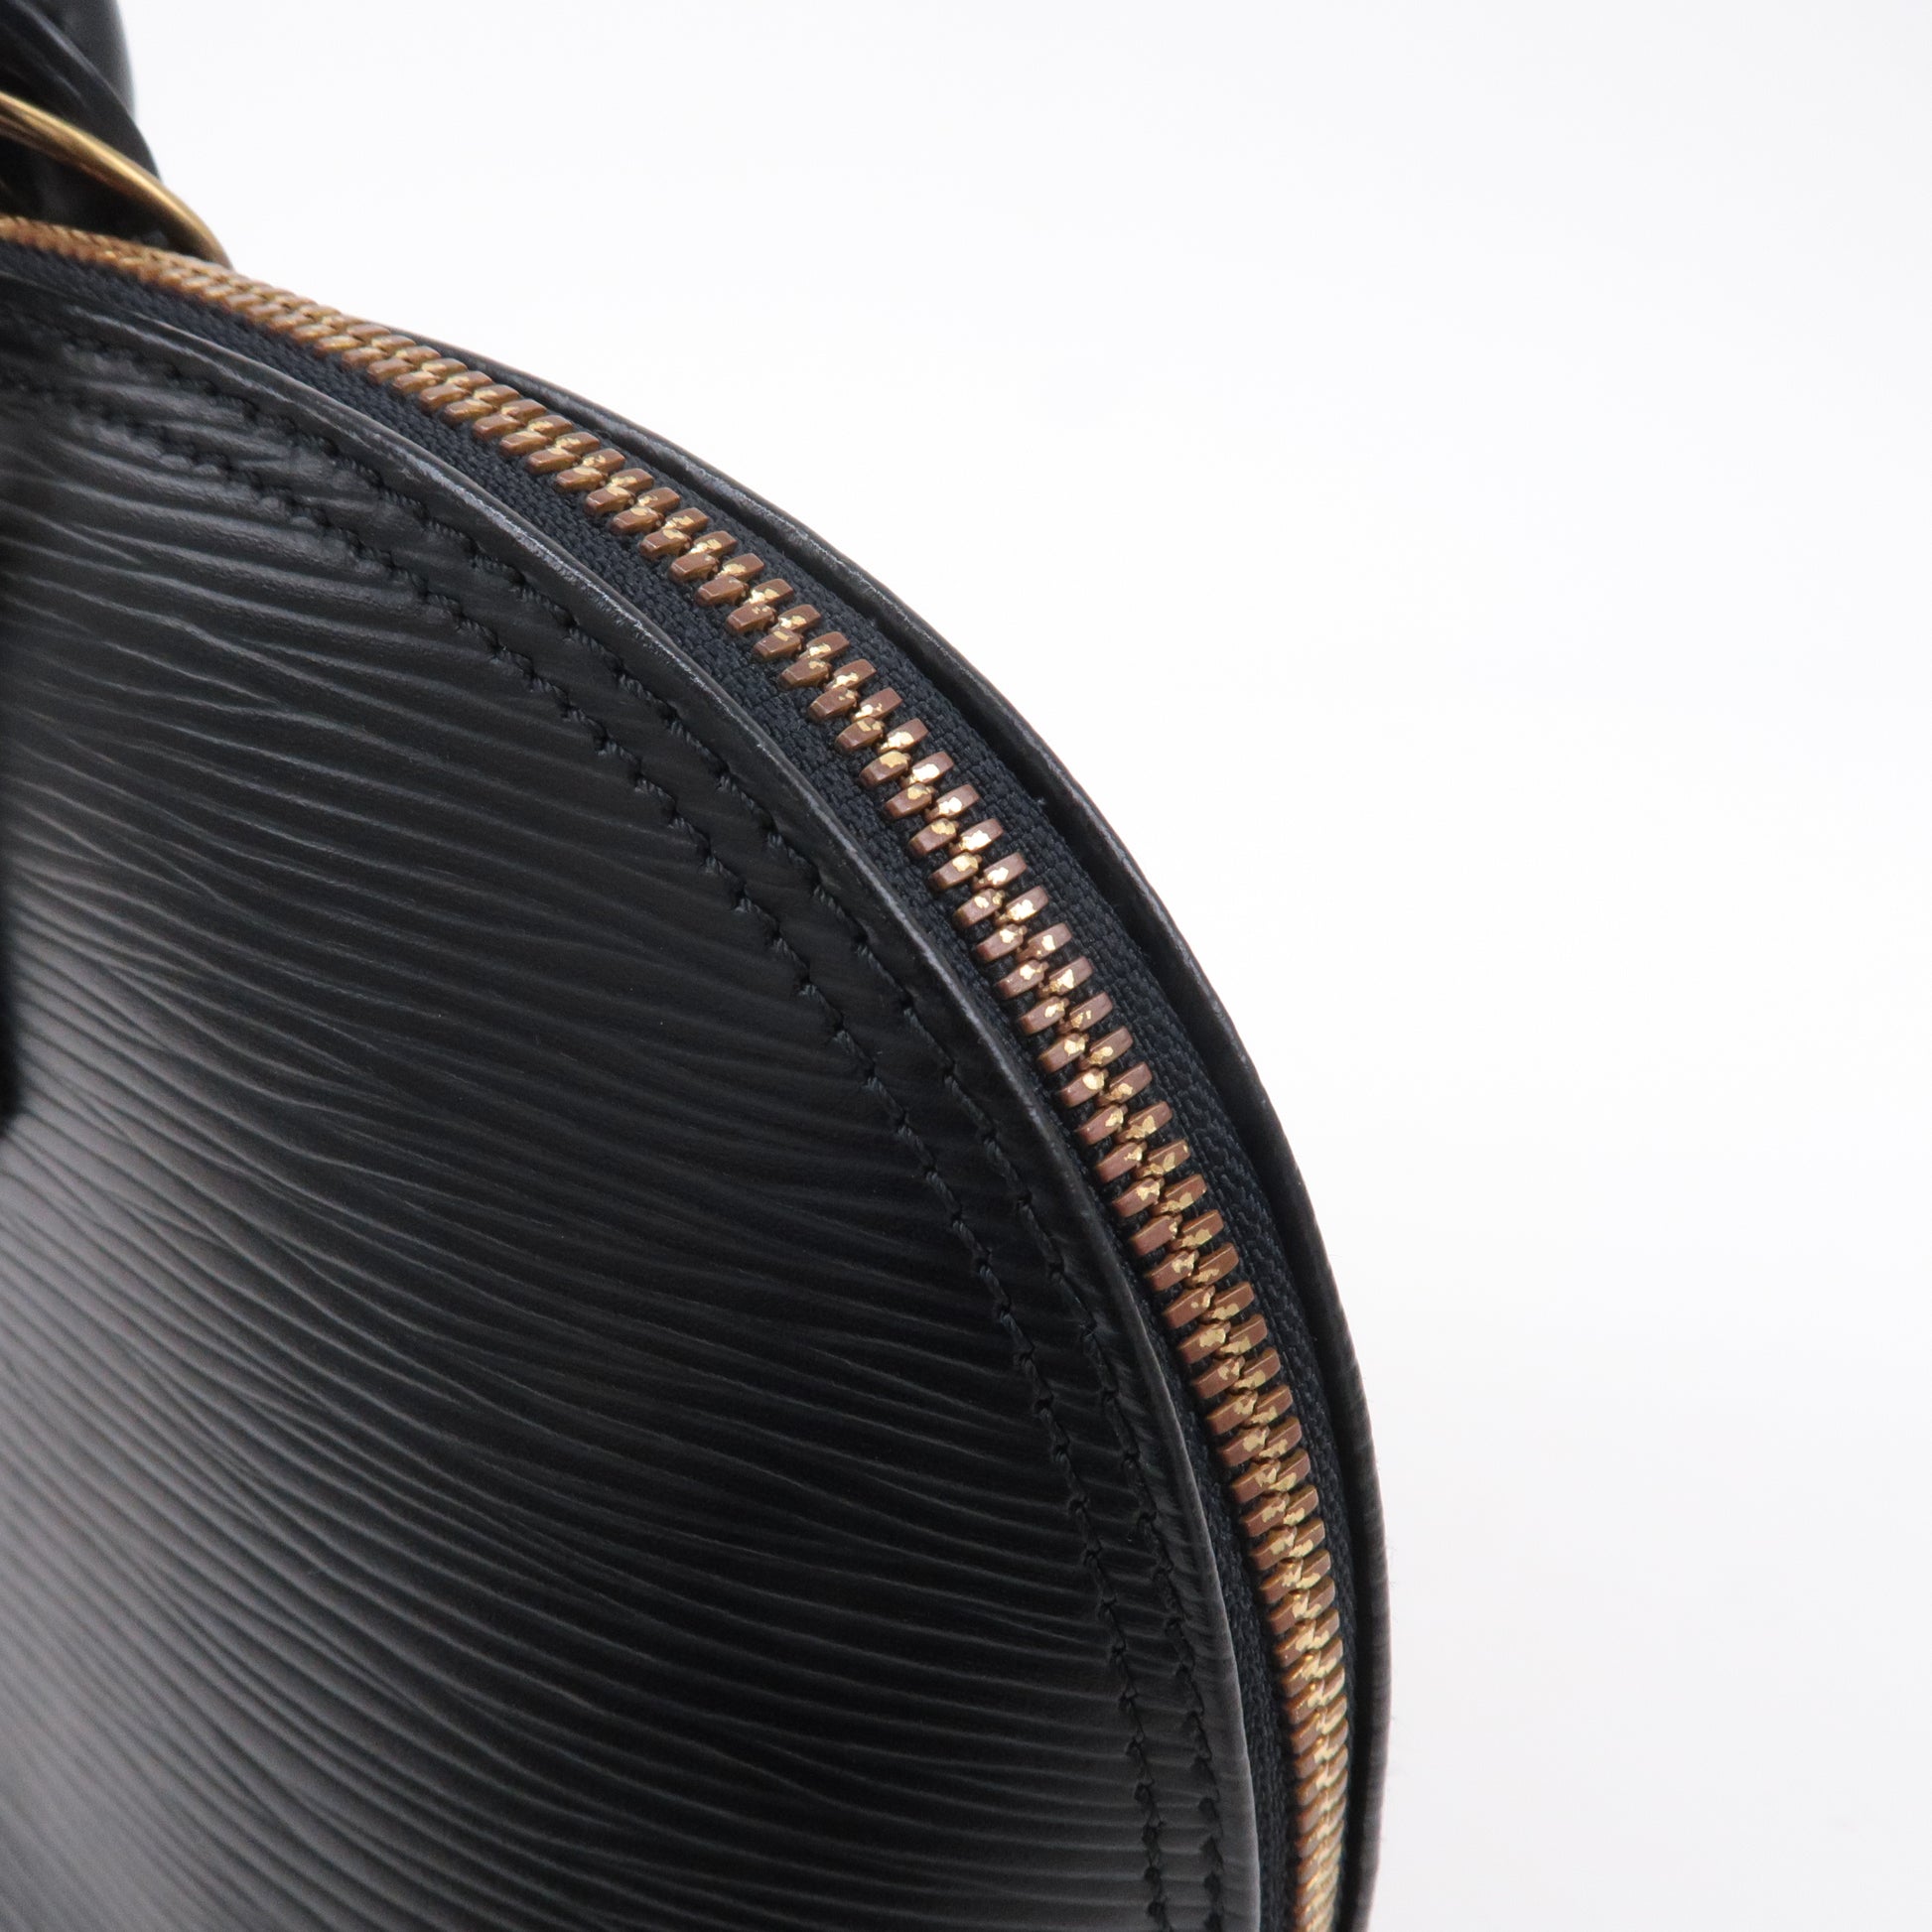 Louis Vuitton Alma PM Black Epi Bag